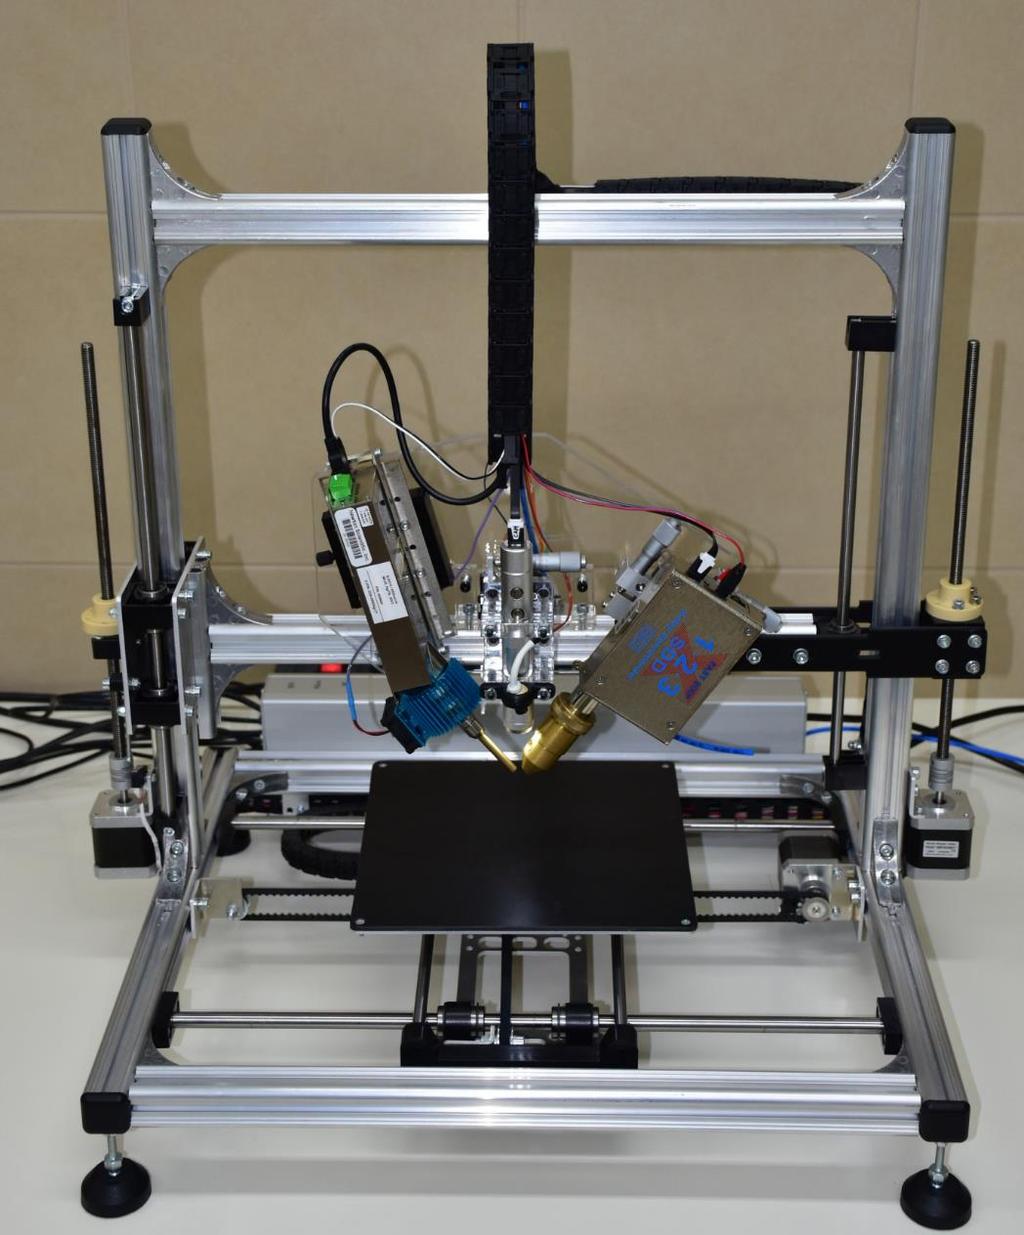 Mechanikai alapok alumínium váz 3D nyomtatott műanyag elemek Röntgenforrás Optikai pozícionáló rendszer SDD szíjmeghajtás